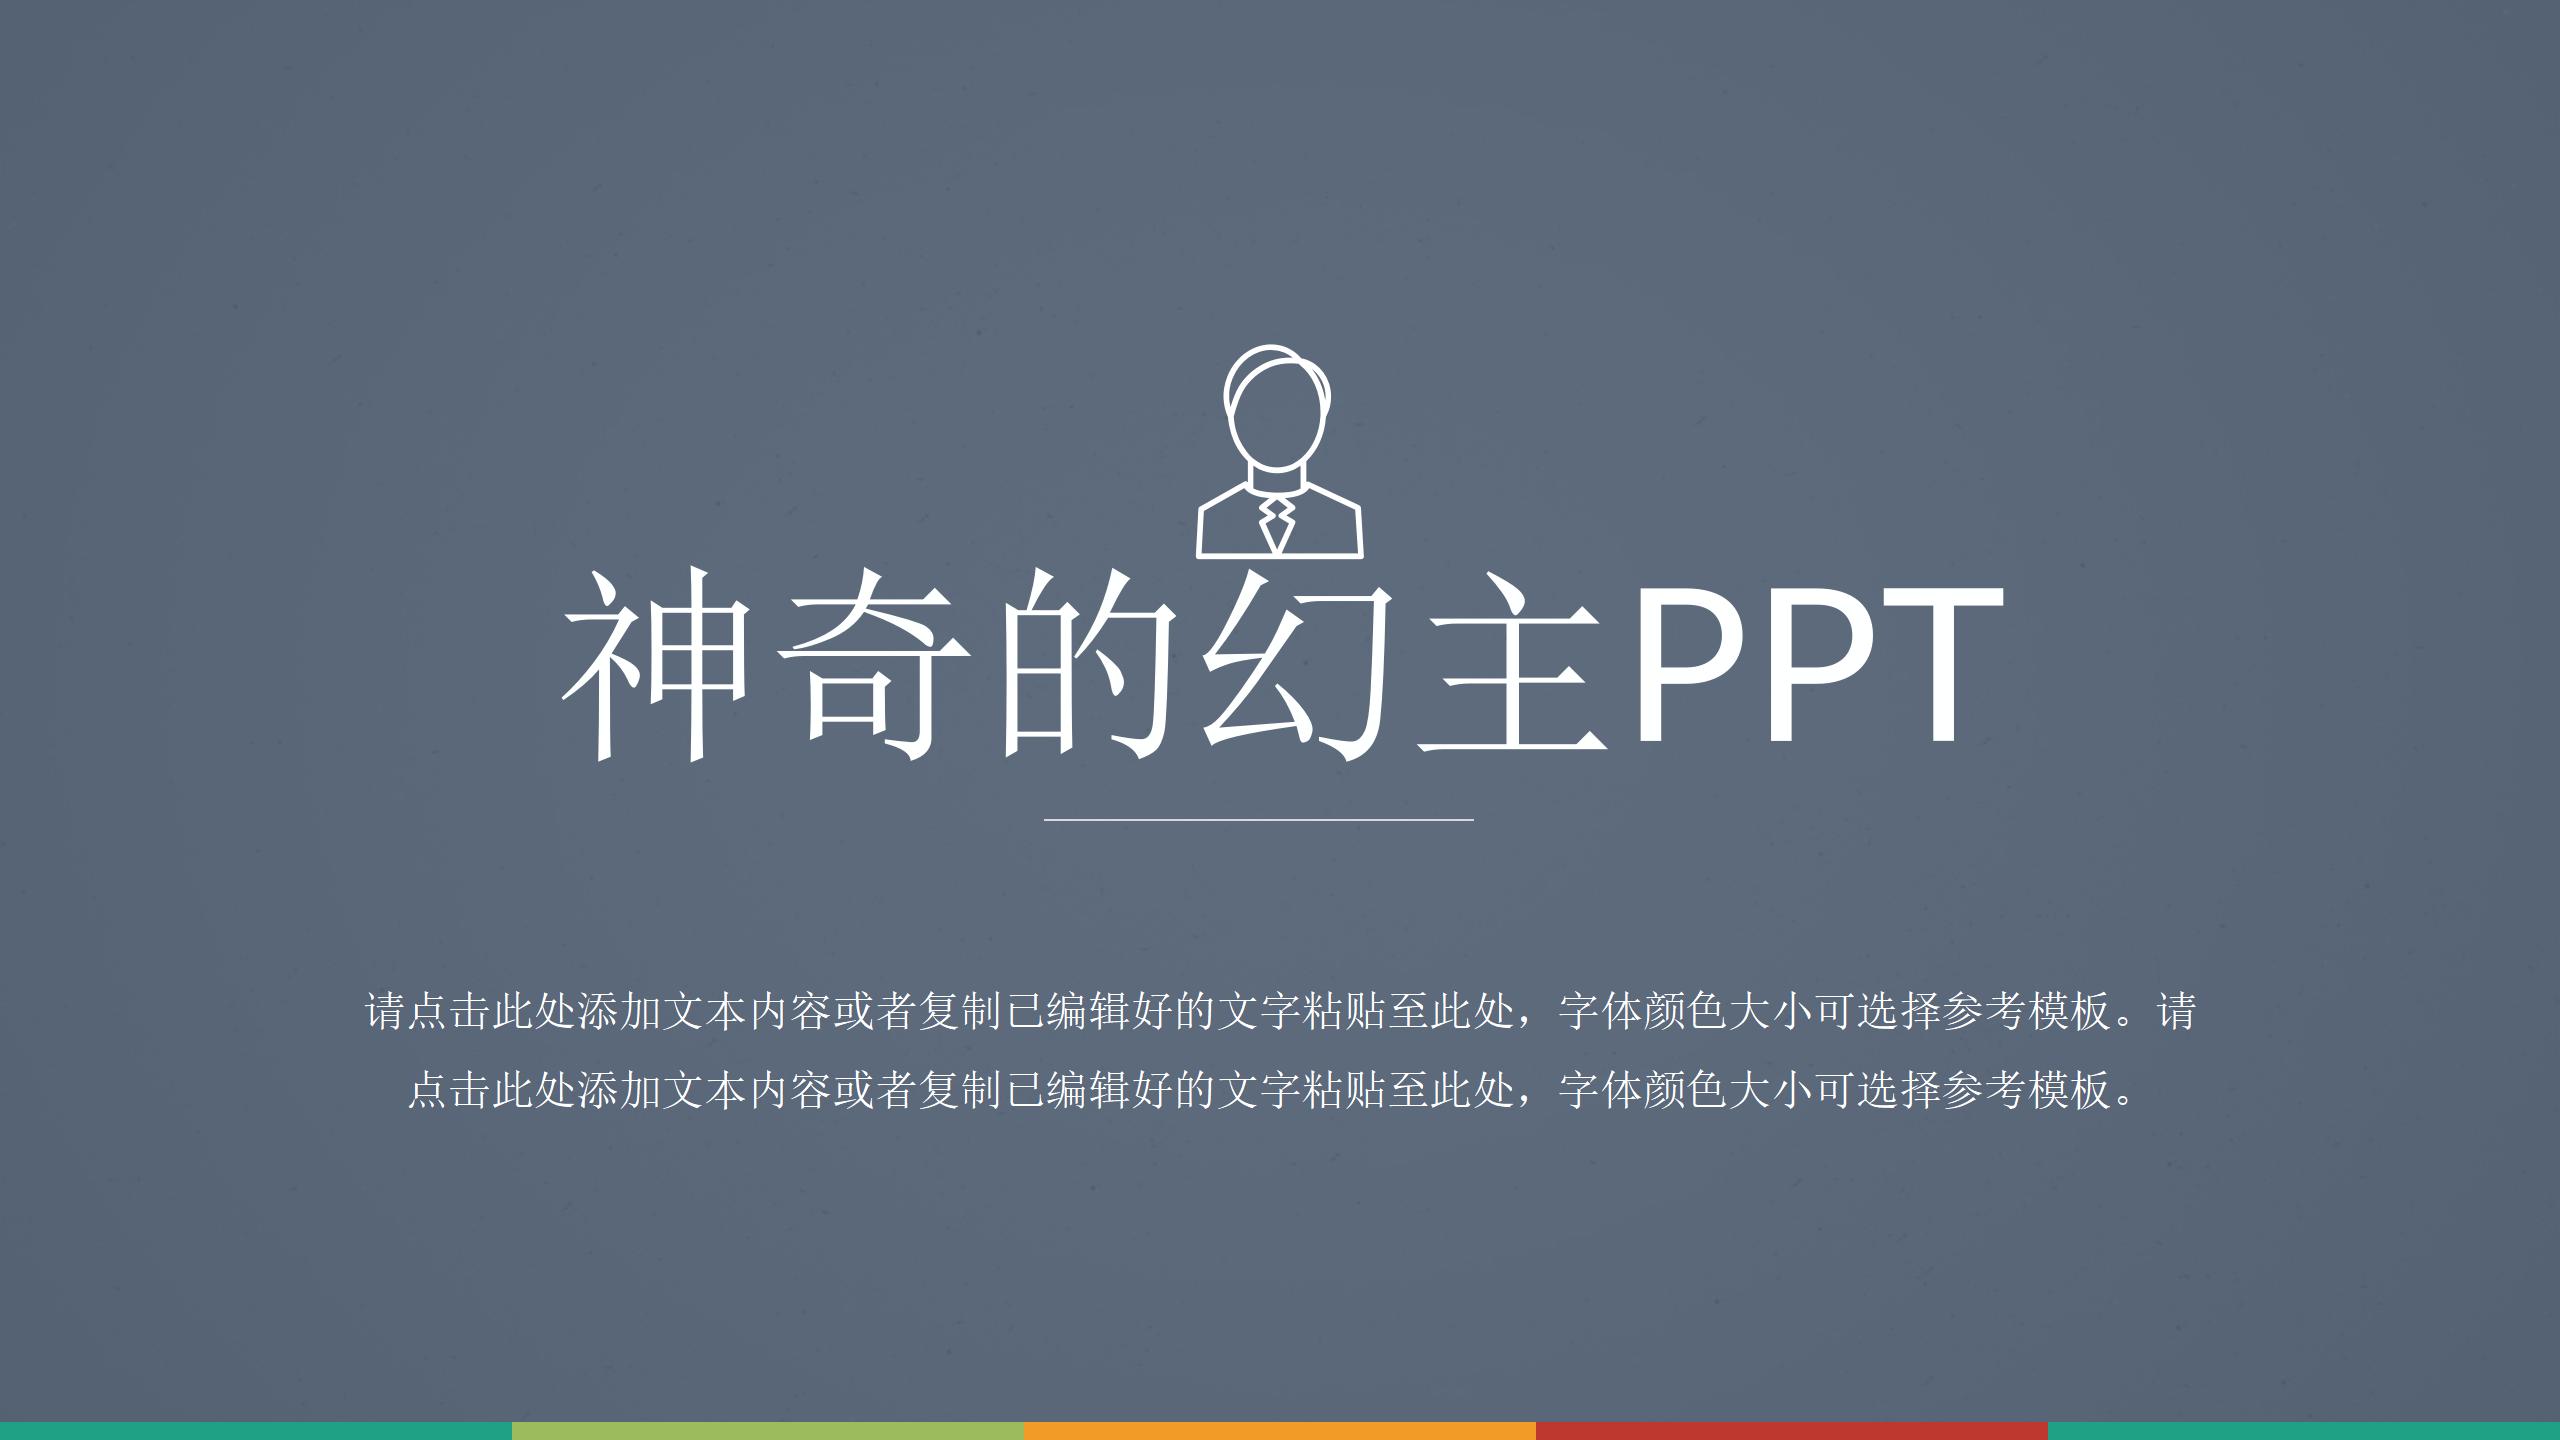 幻主PPT-精品自定义PPT模板 (2)18